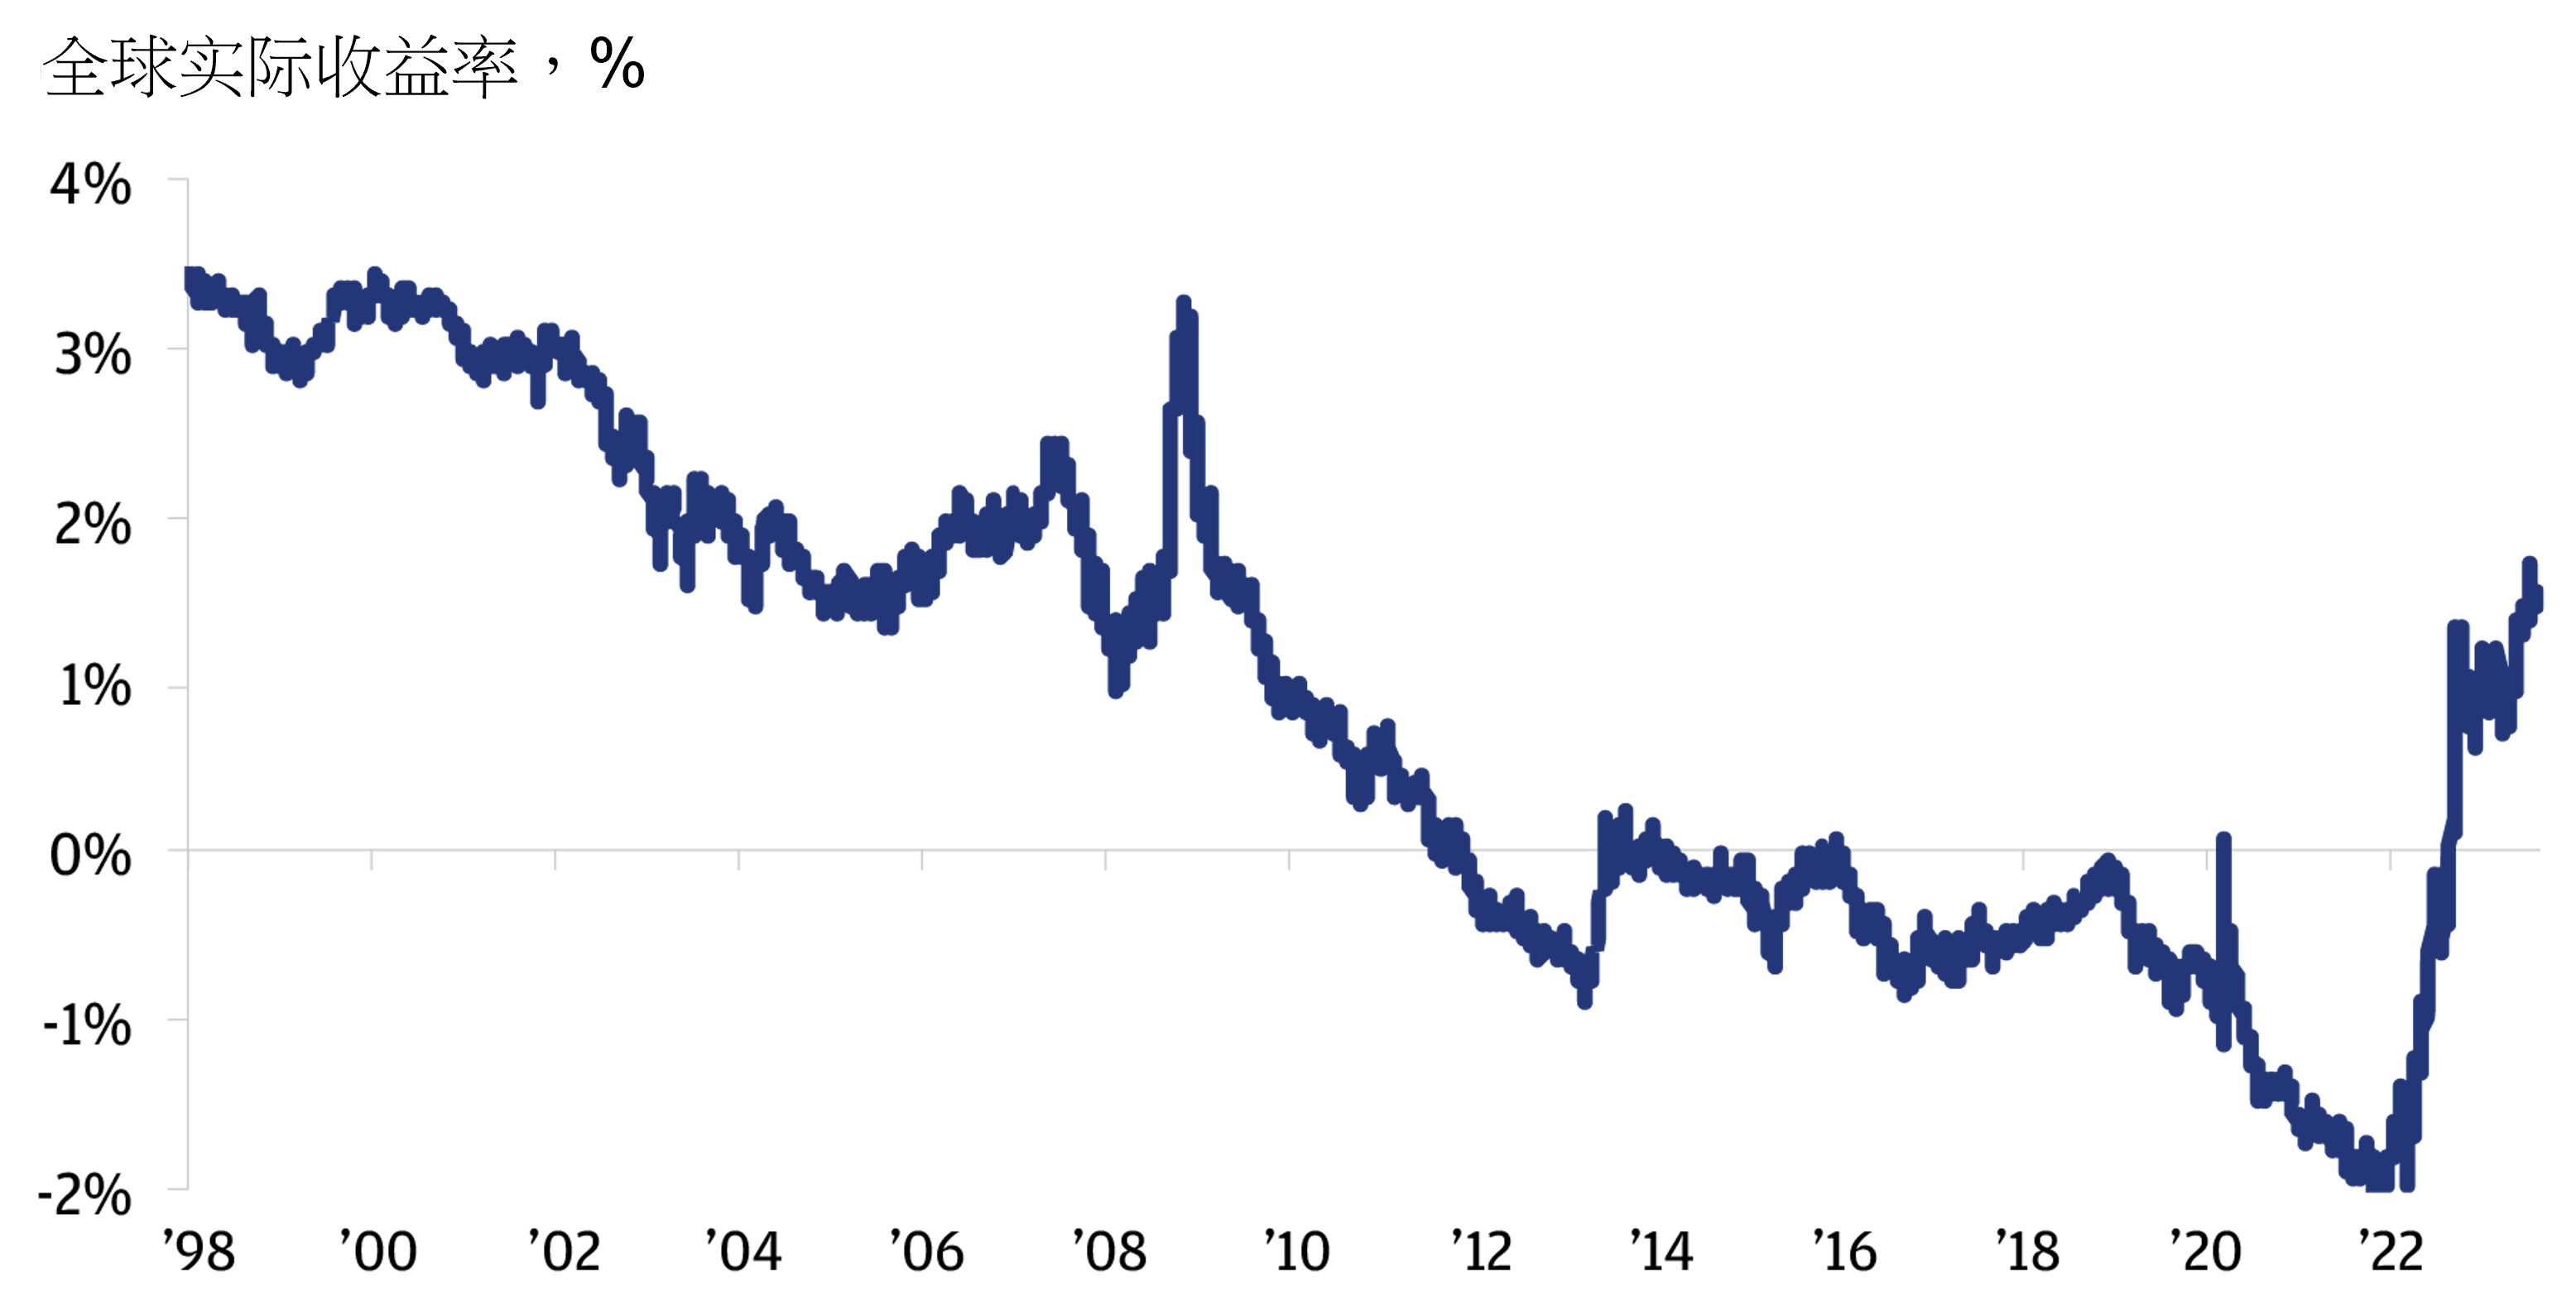 此图显示于1998至2022年的14年间的全球实际收益率百分比。环球实质收益率由1998年的3.5%，大幅下跌至2013年的-1%，此后基本维持不变，直至于2022年再度下跌至-2%，其后于同年底大幅回升至接近2%。